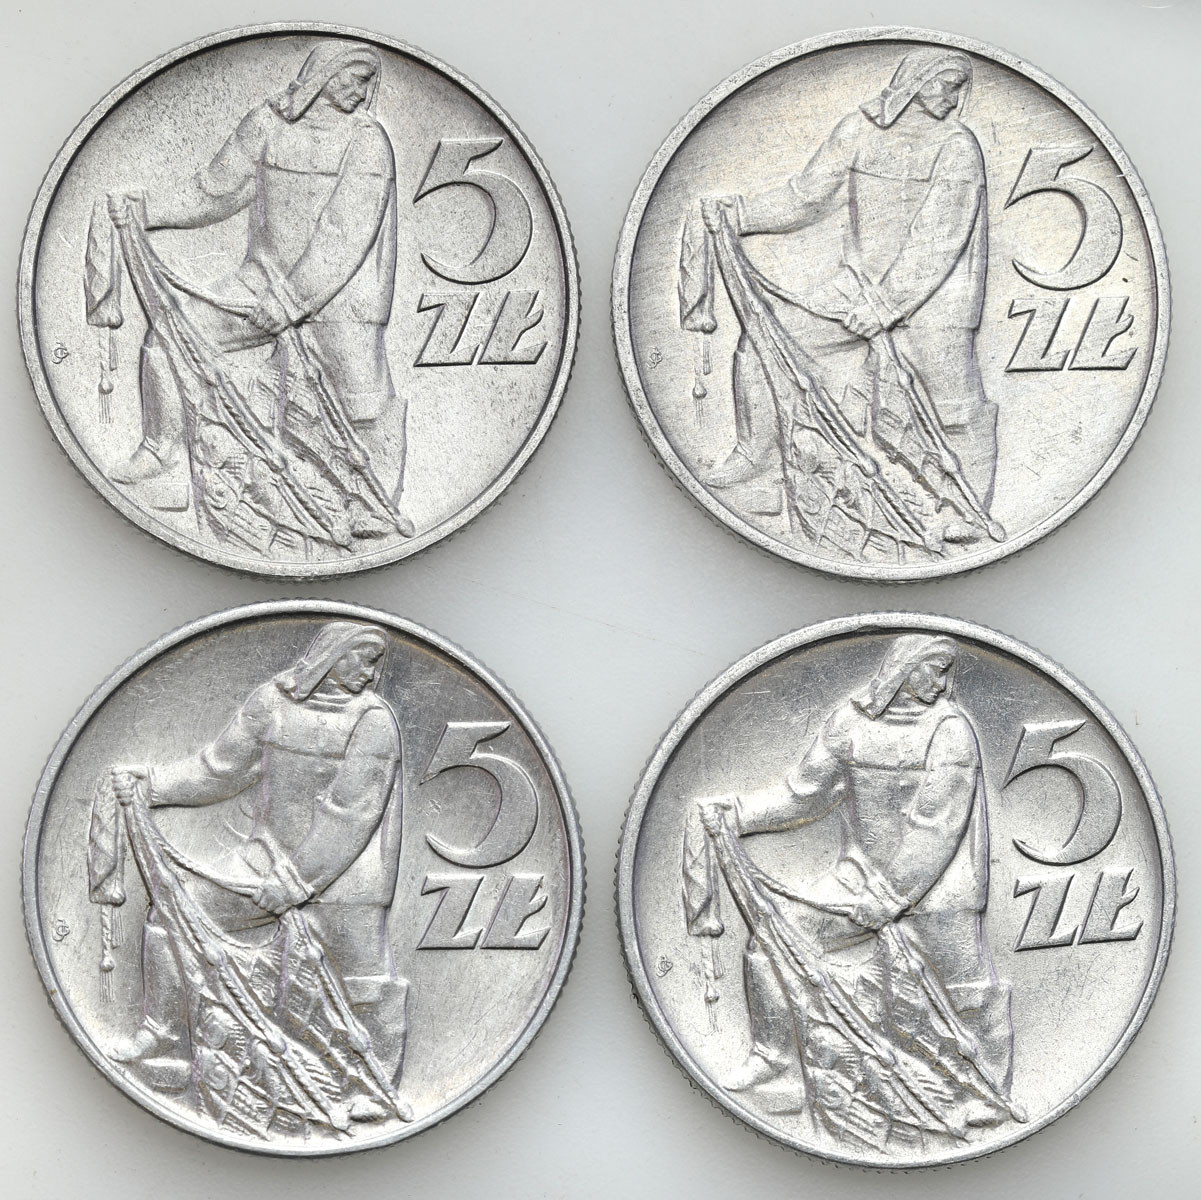 PRL. 5 złotych 1959 - 1974, rybak, zestaw 4 monet – PIĘKNE